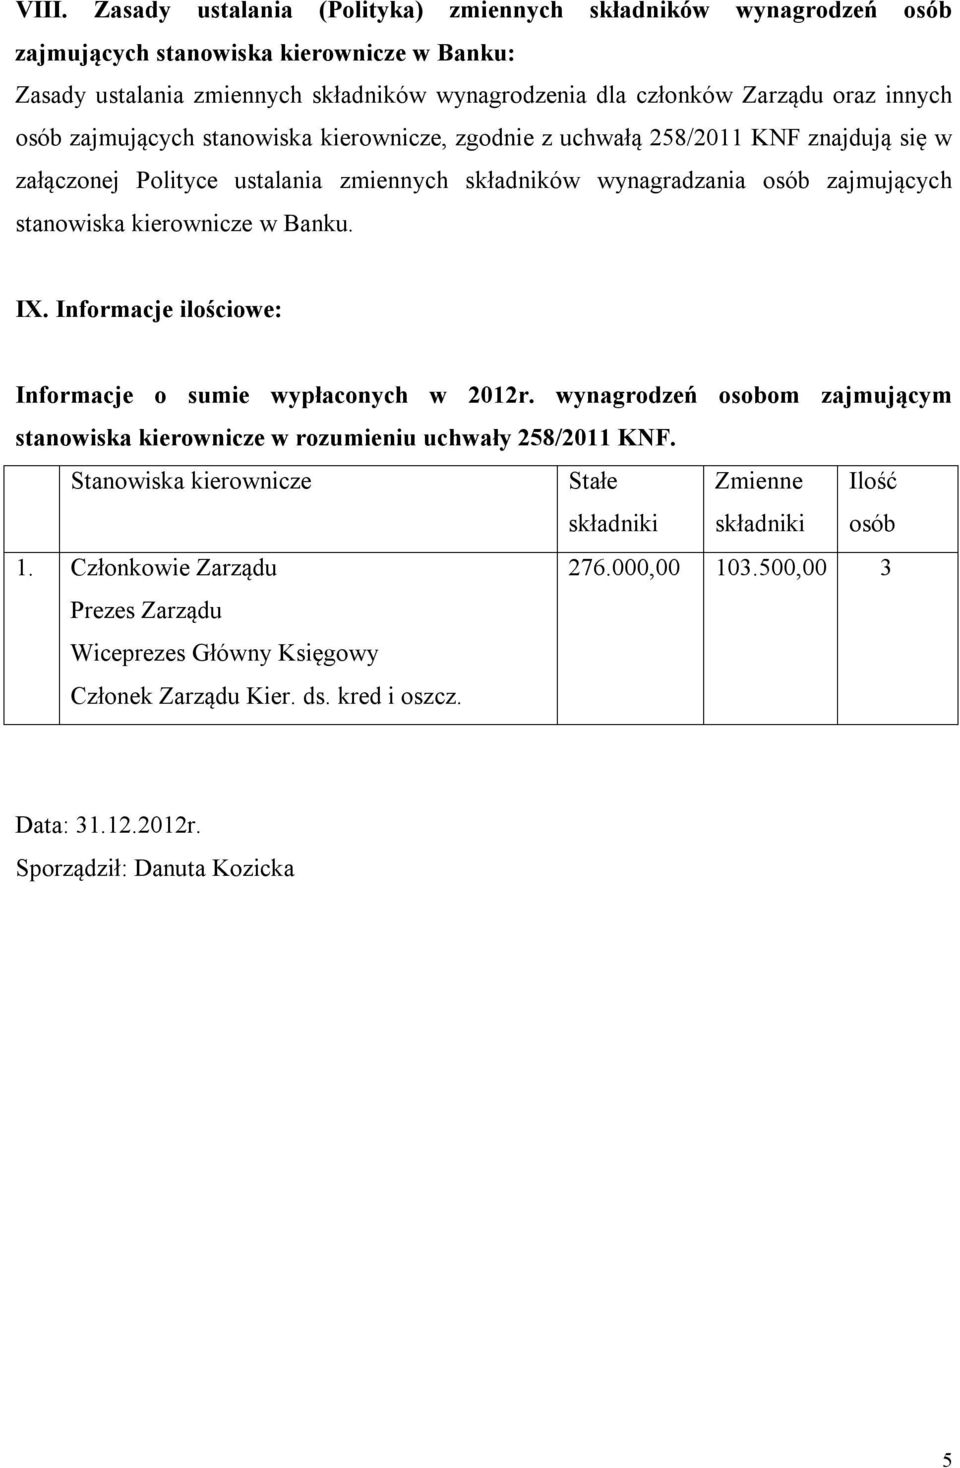 w Banku. IX. Informacje ilościowe: Informacje o sumie wypłaconych w 2012r. wynagrodzeń osobom zajmującym stanowiska kierownicze w rozumieniu uchwały 258/2011 KNF.